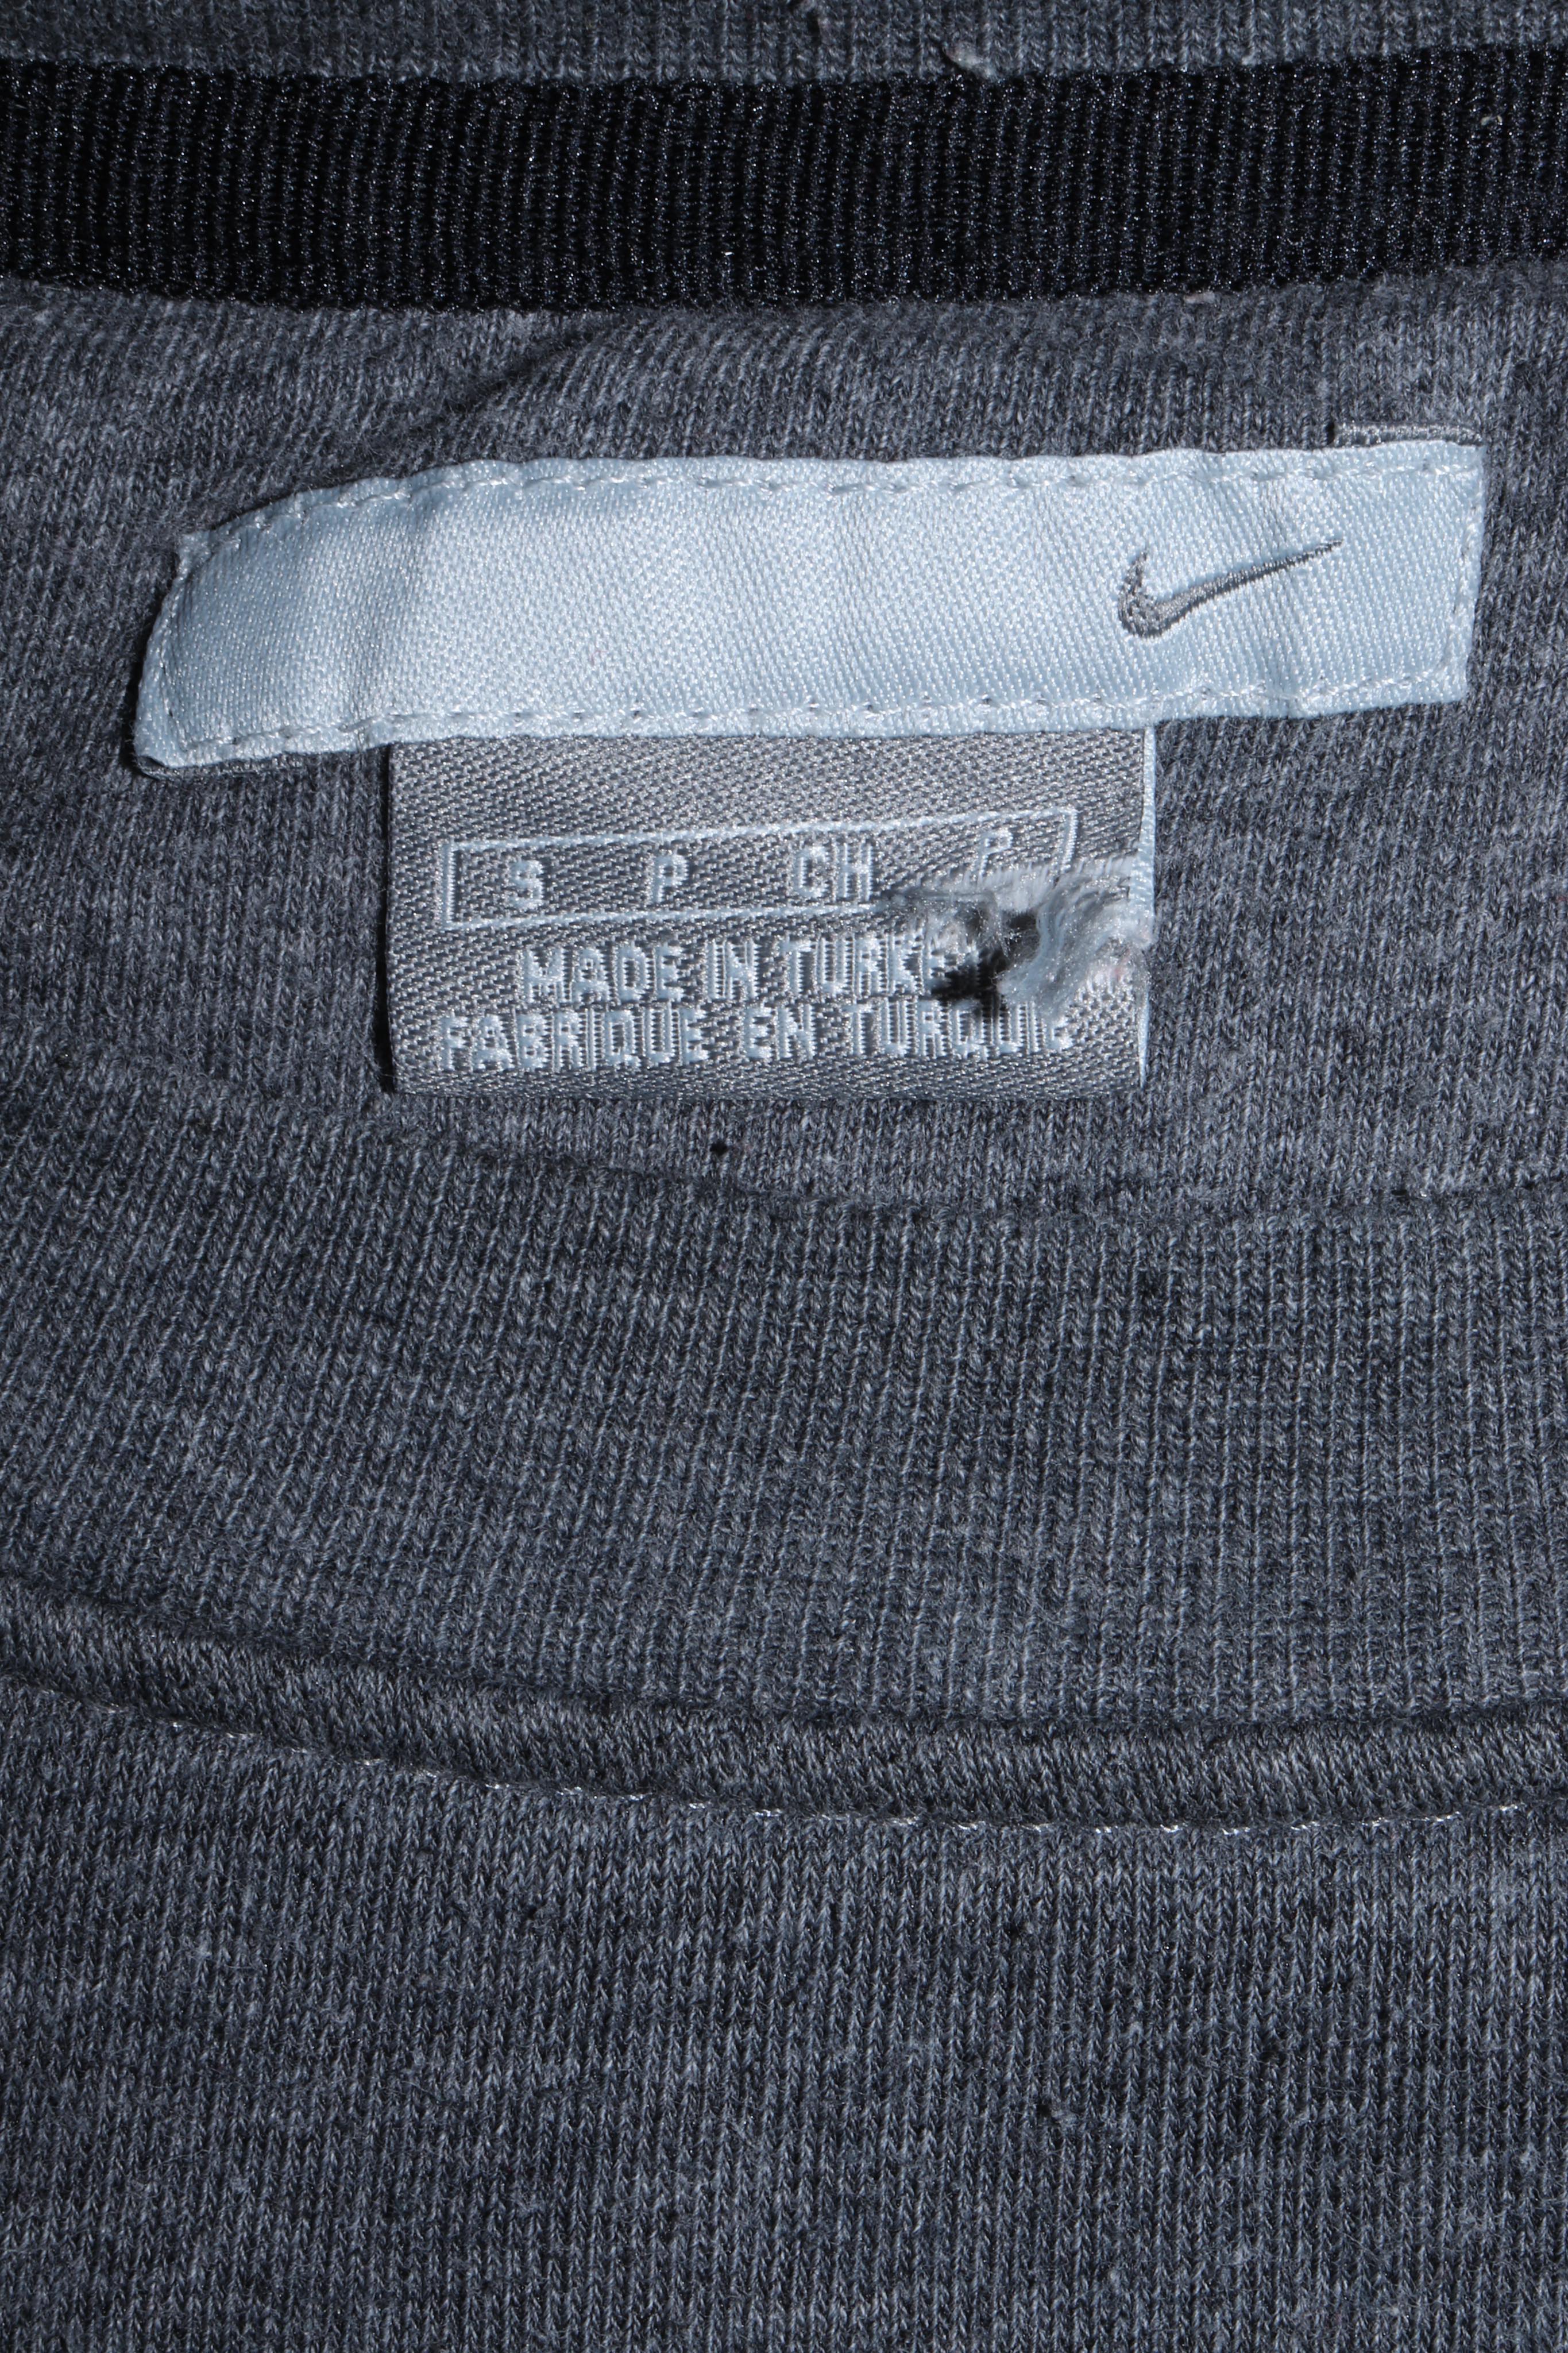 Nike Early 2000s Dark Grey Sweatshirt Vintage